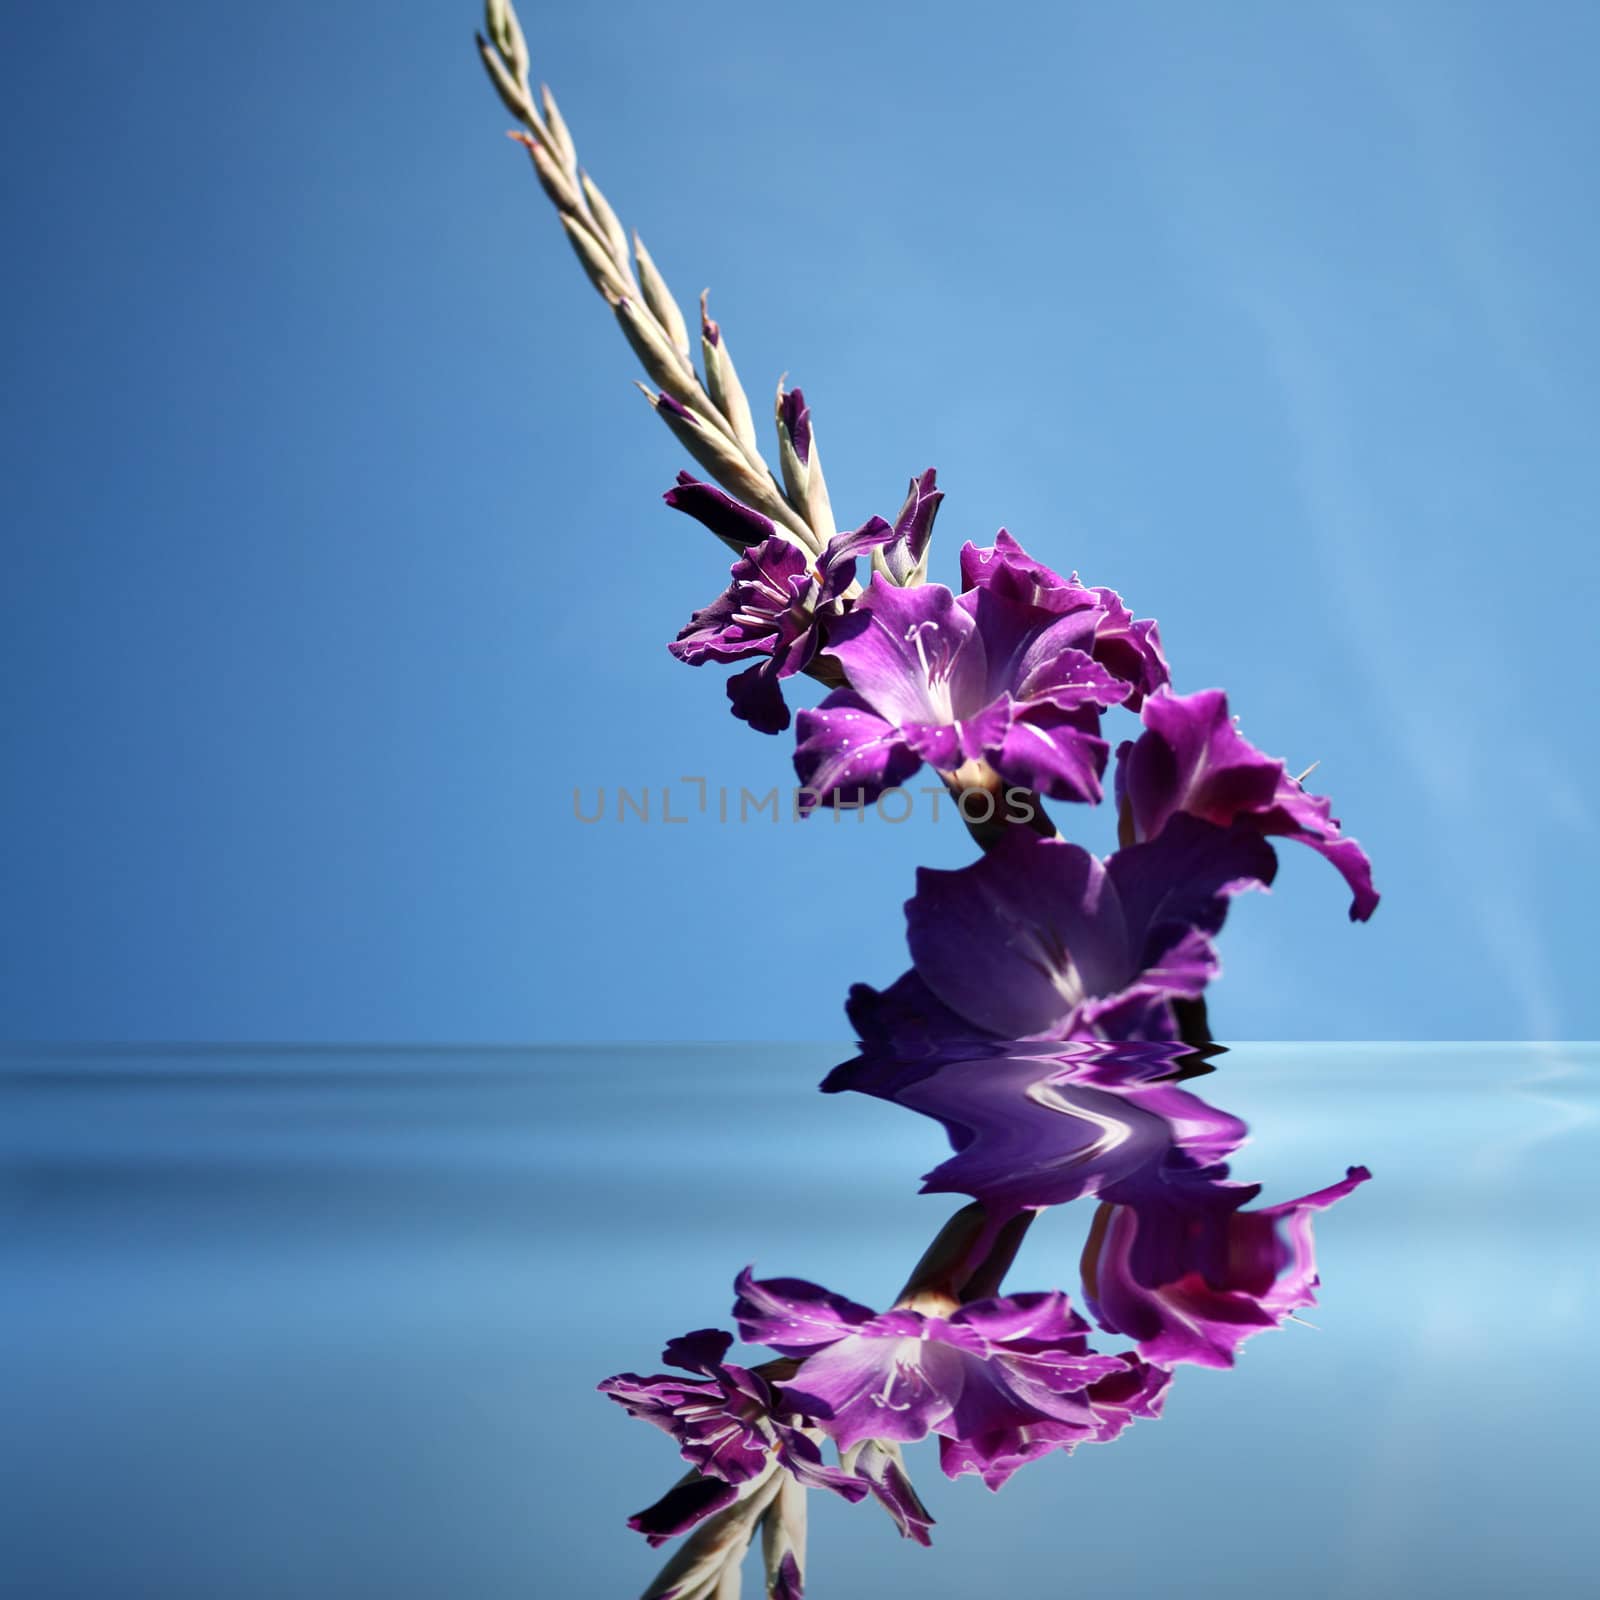 gladioli by photochecker